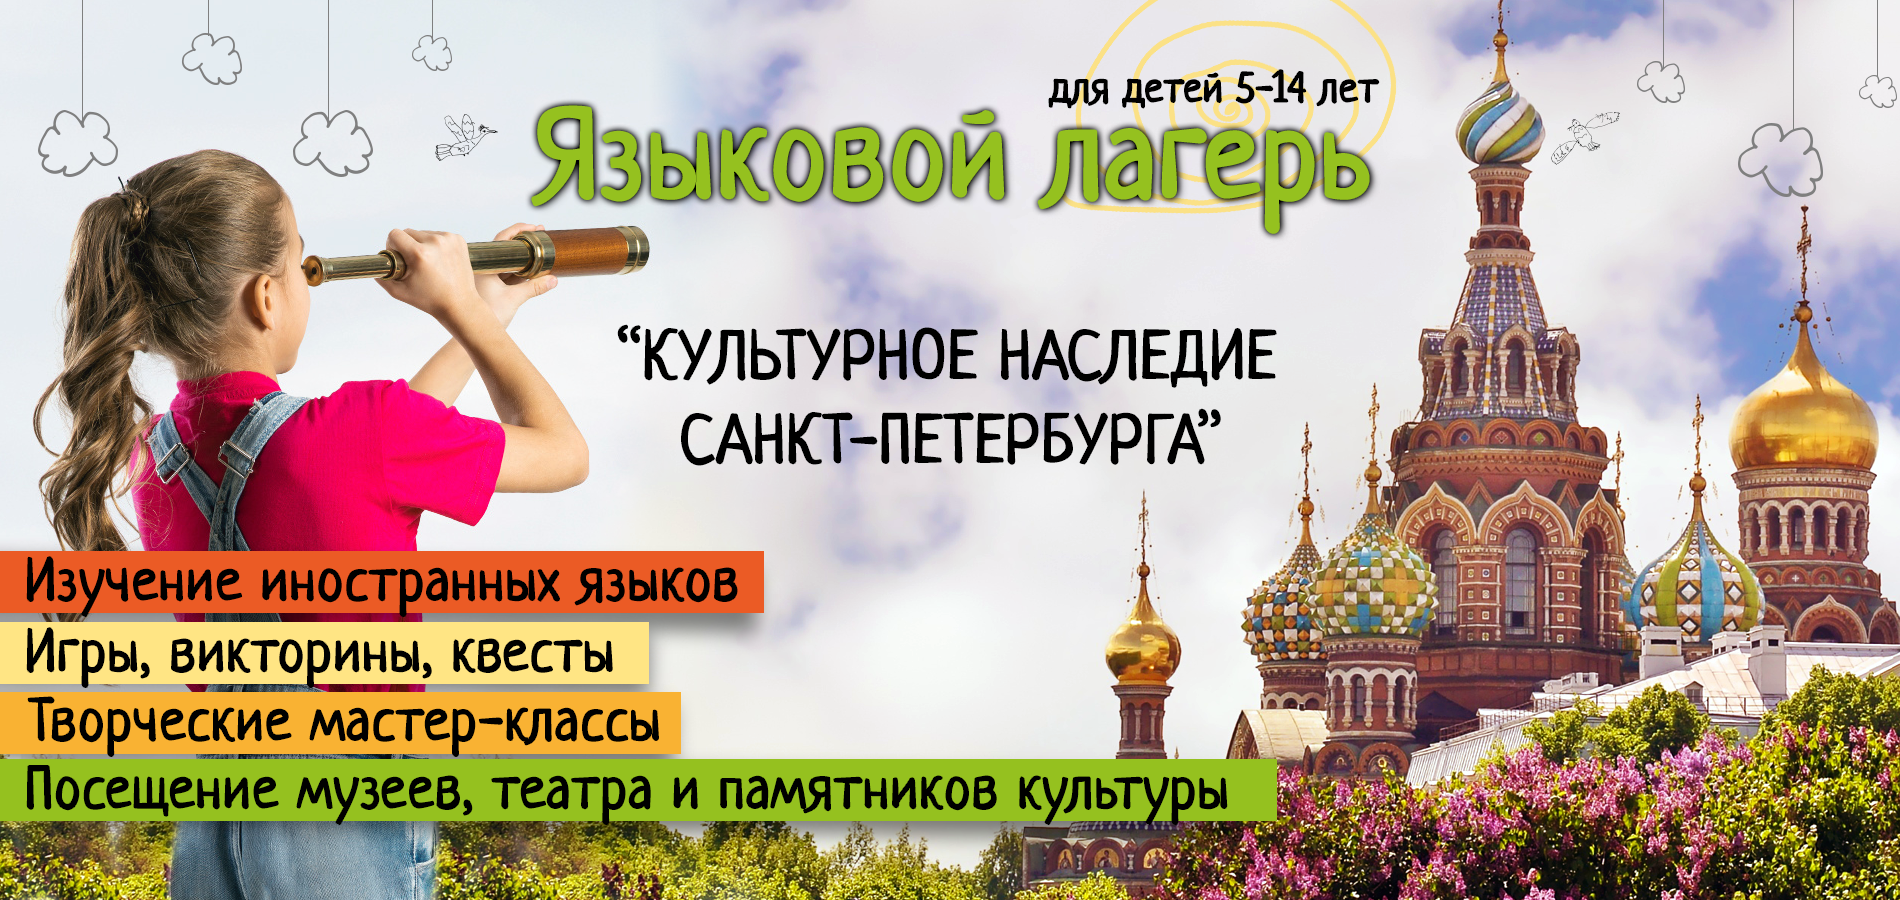 Тема: "Культурное наследие Петербурга"